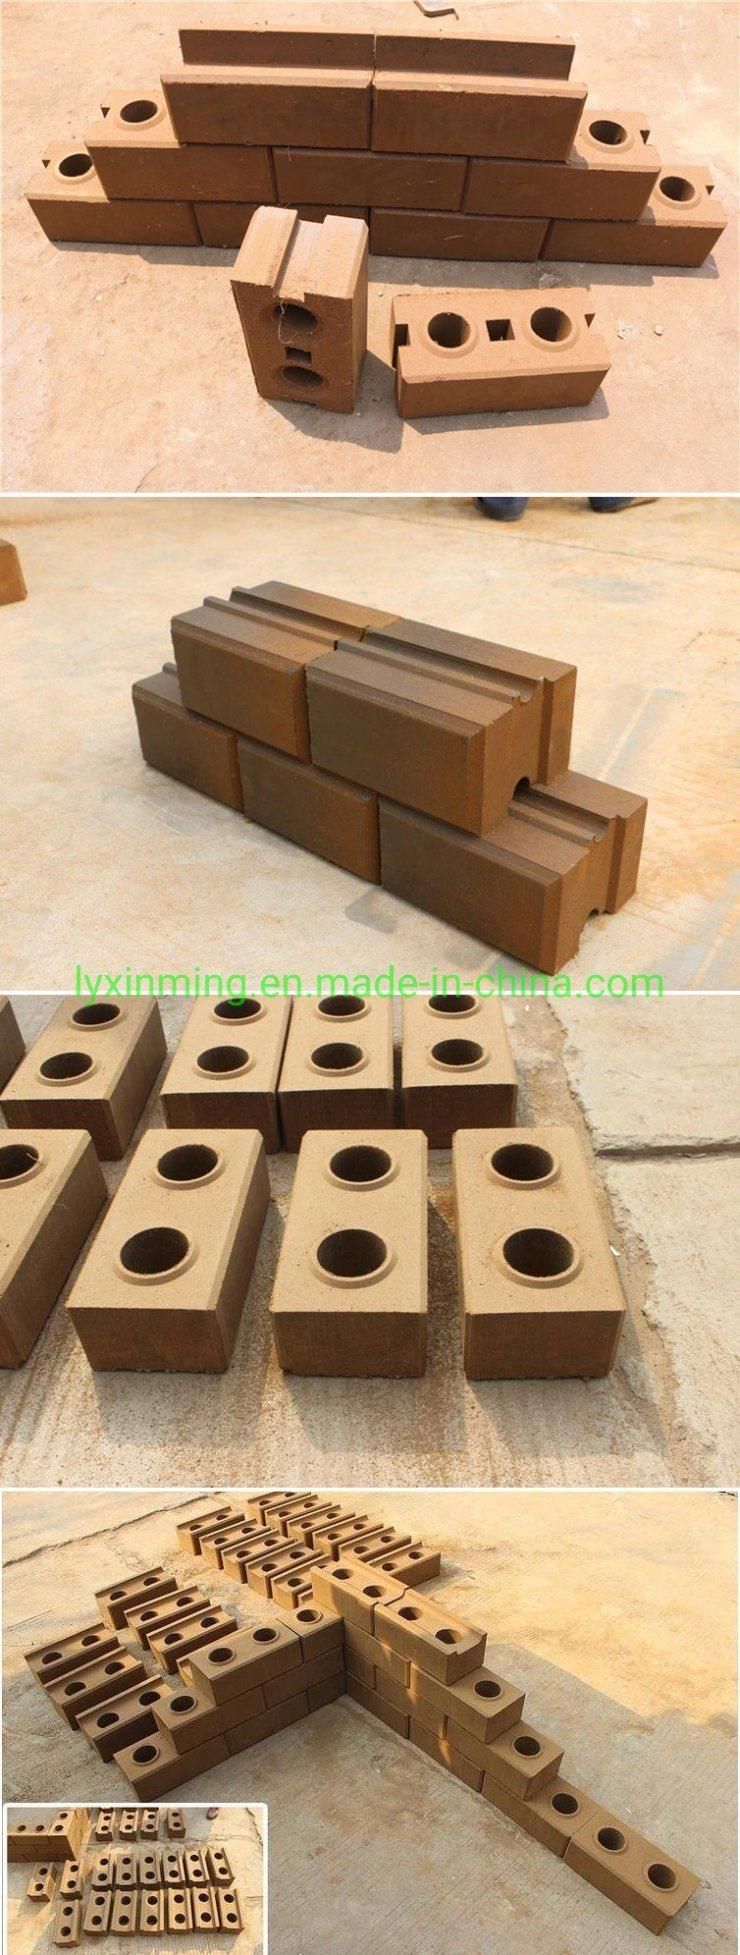 Xinming Xm2-40 Interlocking Brick Making Machine Block Forming Machine in Factory